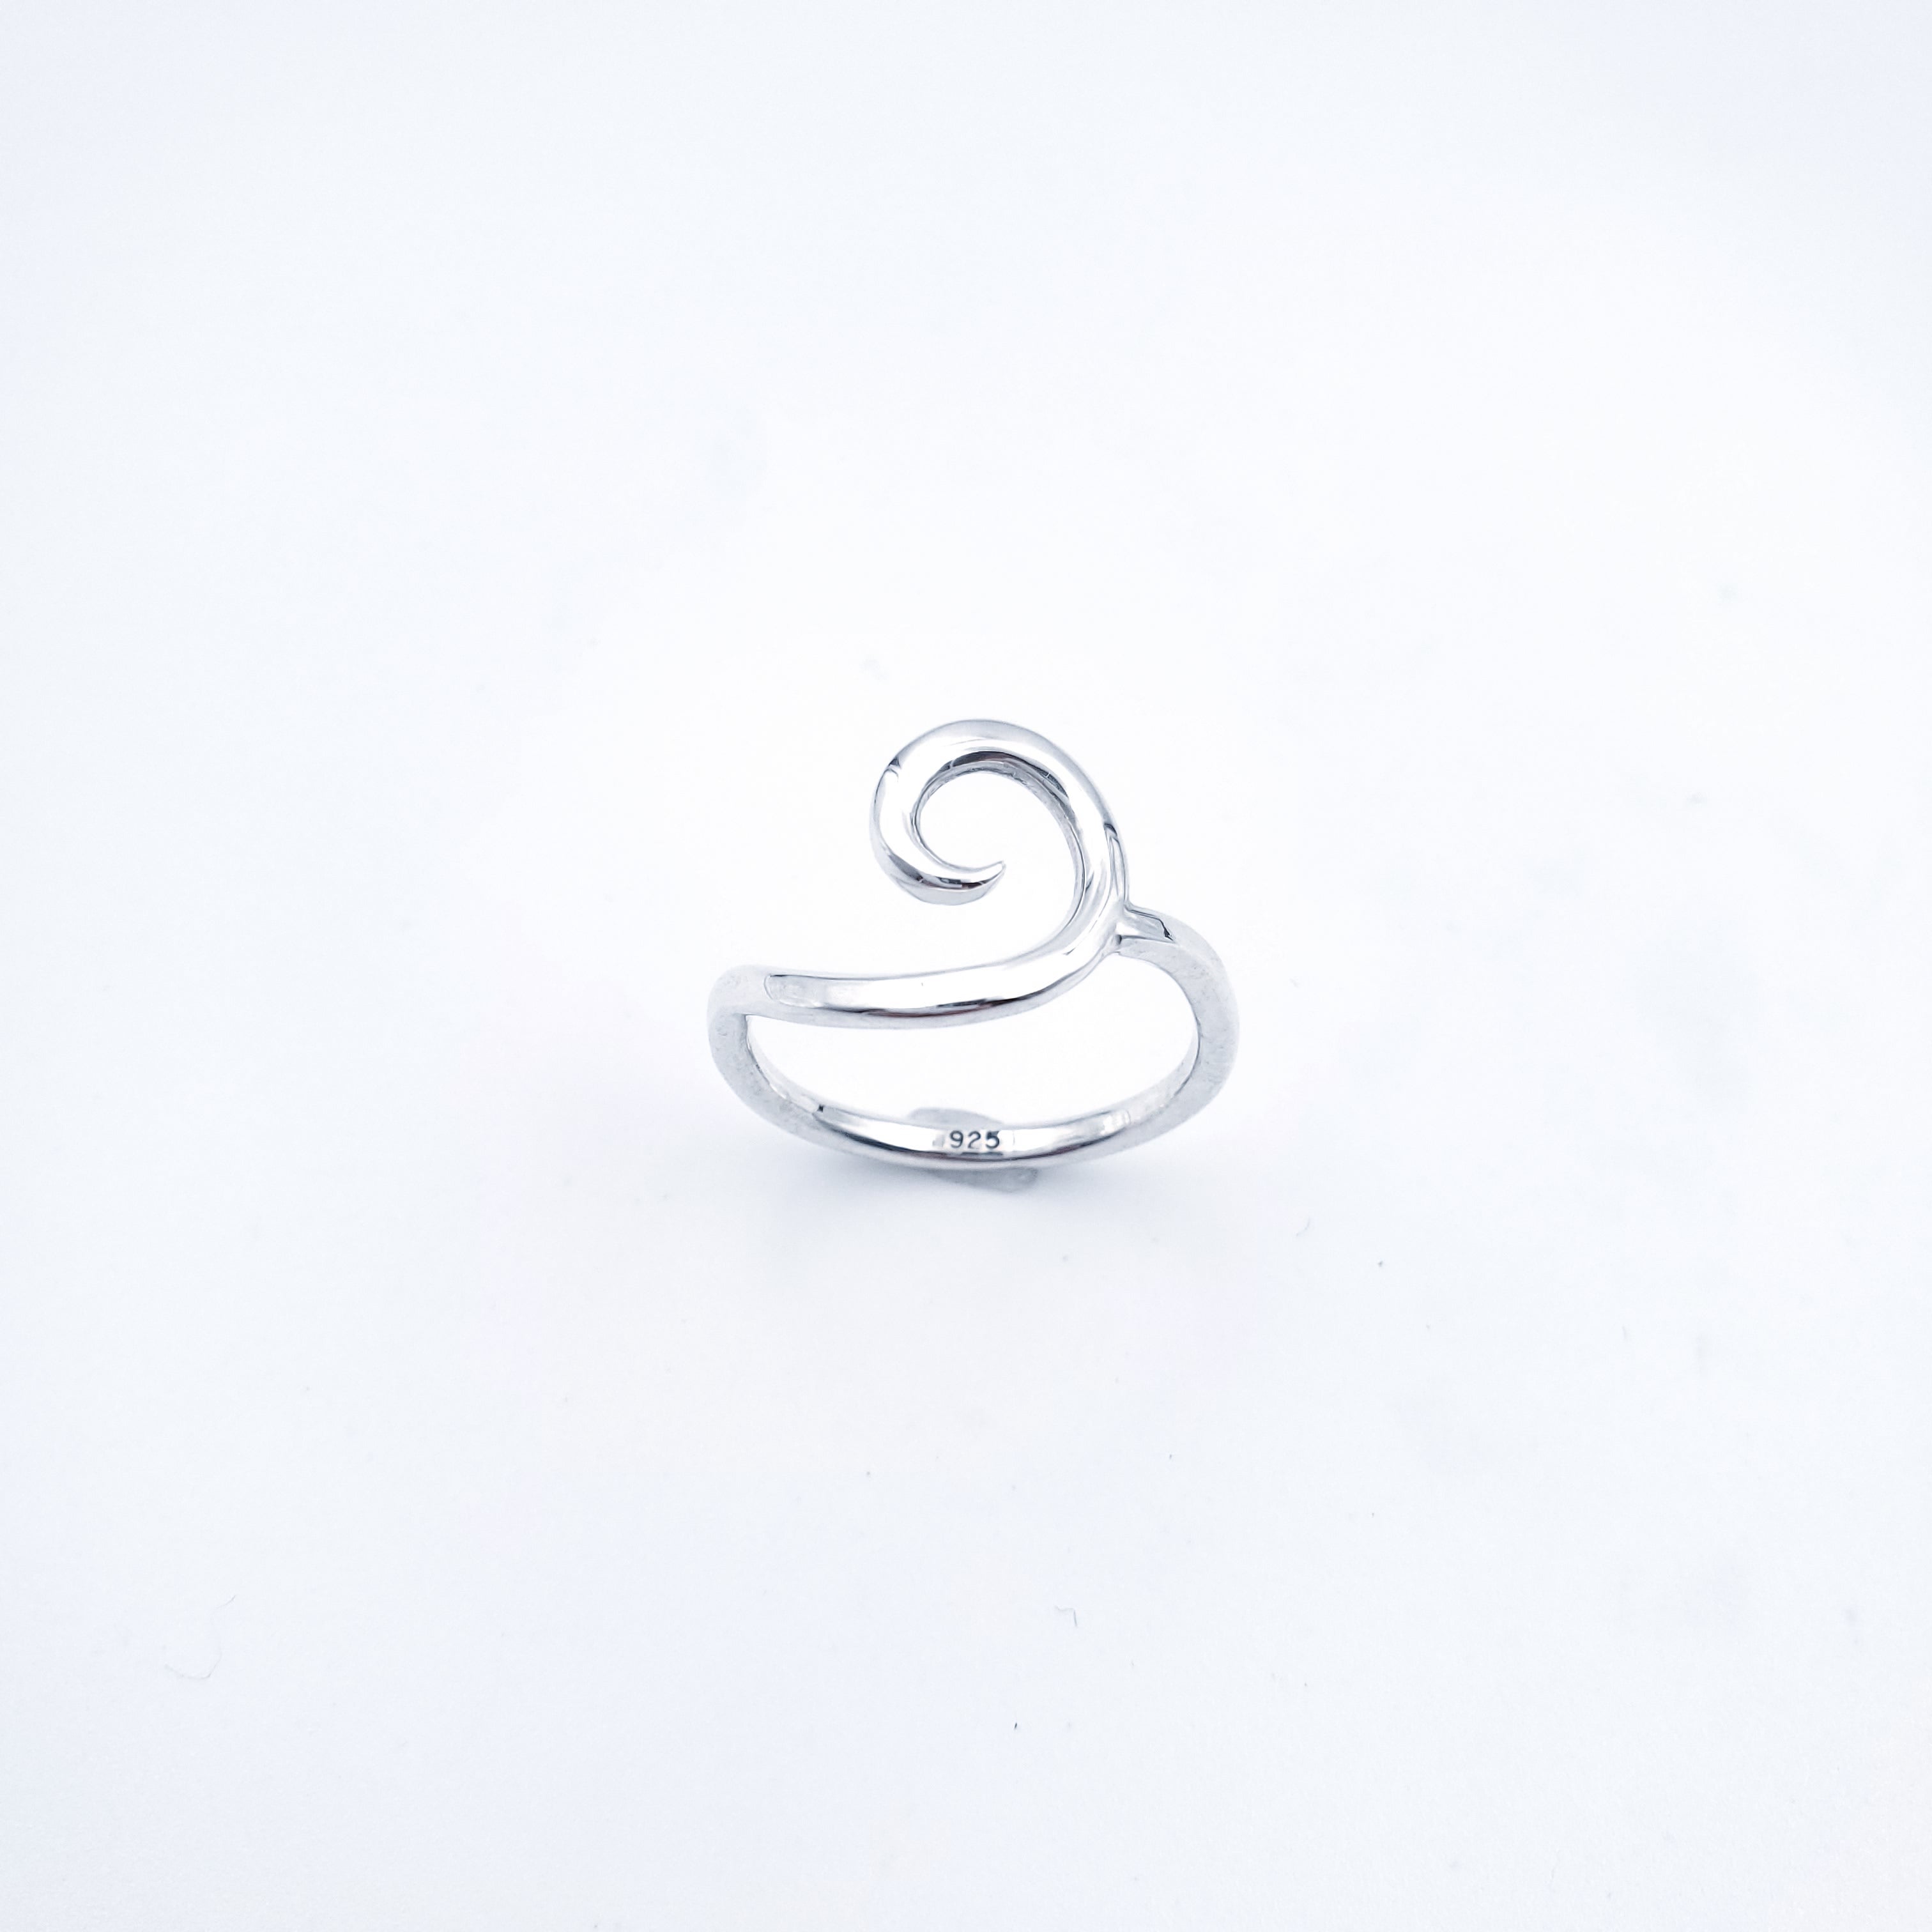 Sterling silver spiral ring